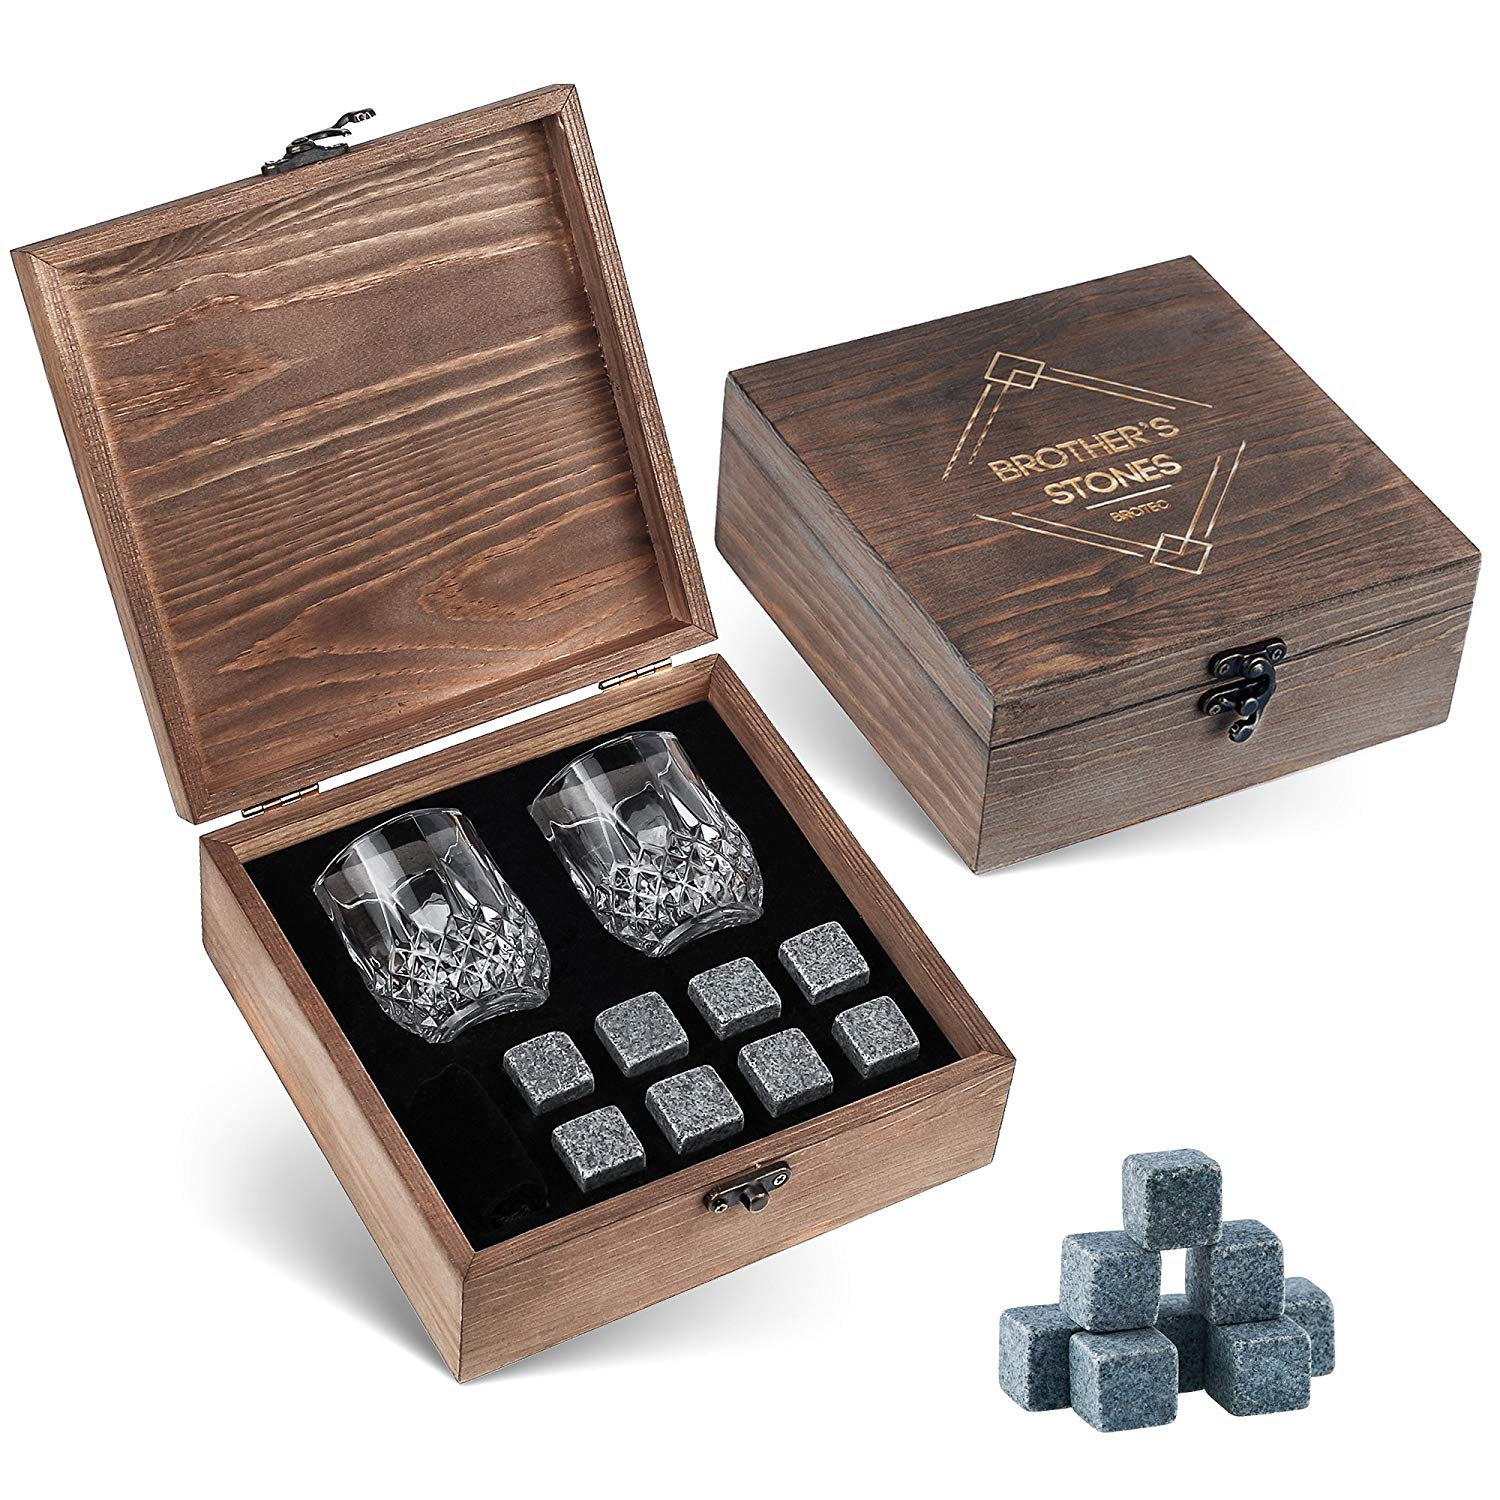 Gartendeko Kinder Genial Whiskey Steine Geschenk Set – 8 Granit Chillen Whisky Rocks